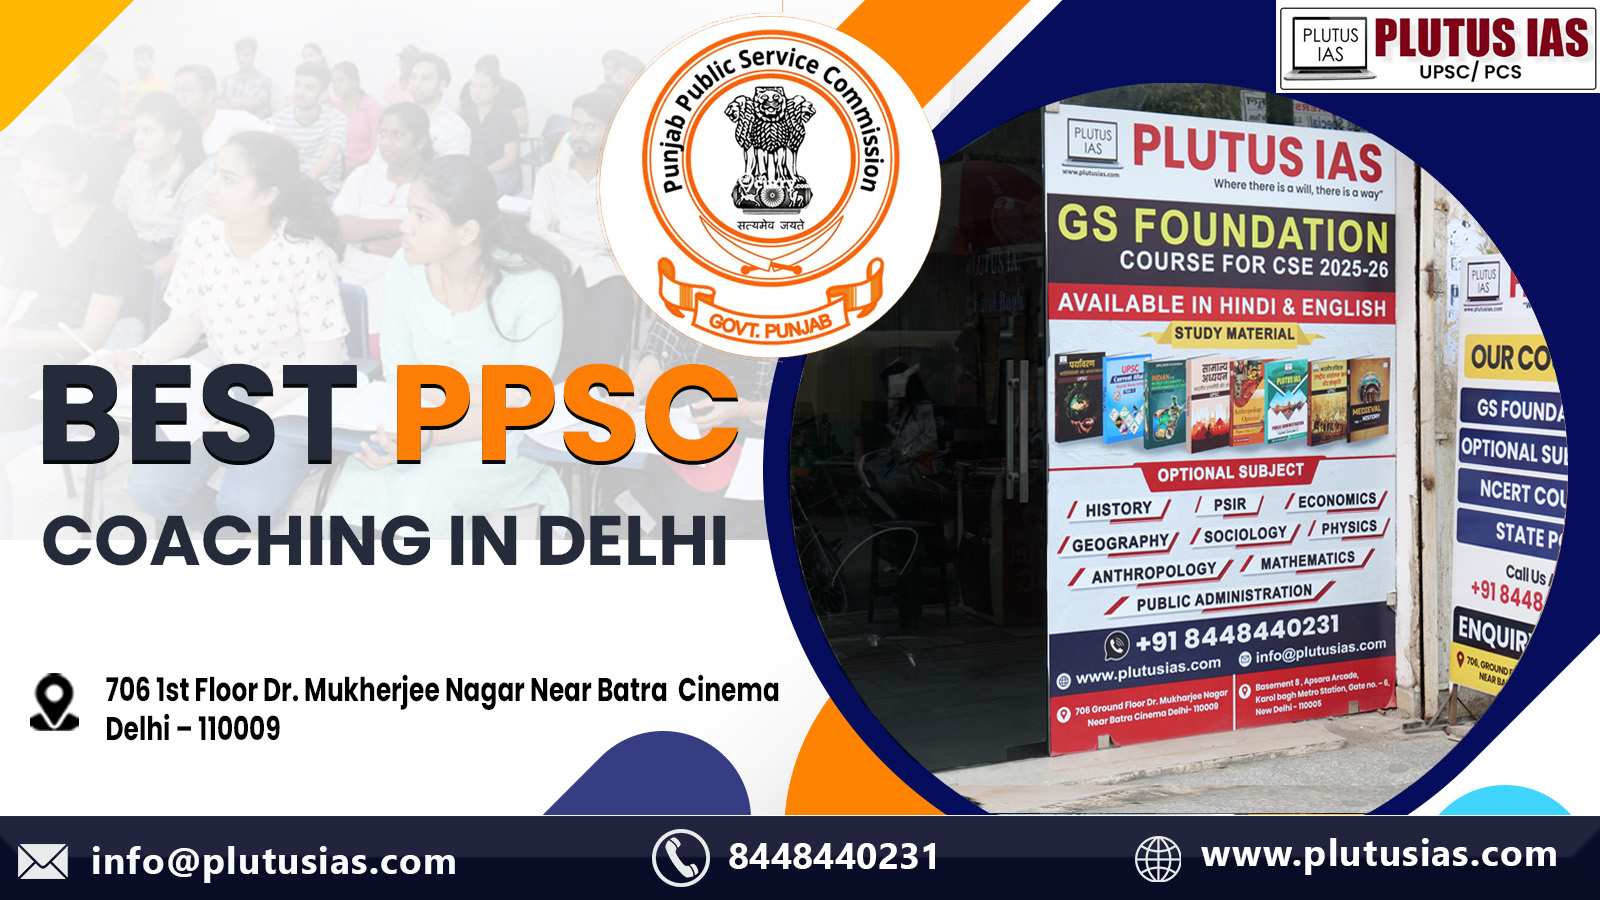 Plutus IAS Best PPSC Coaching in Delhi